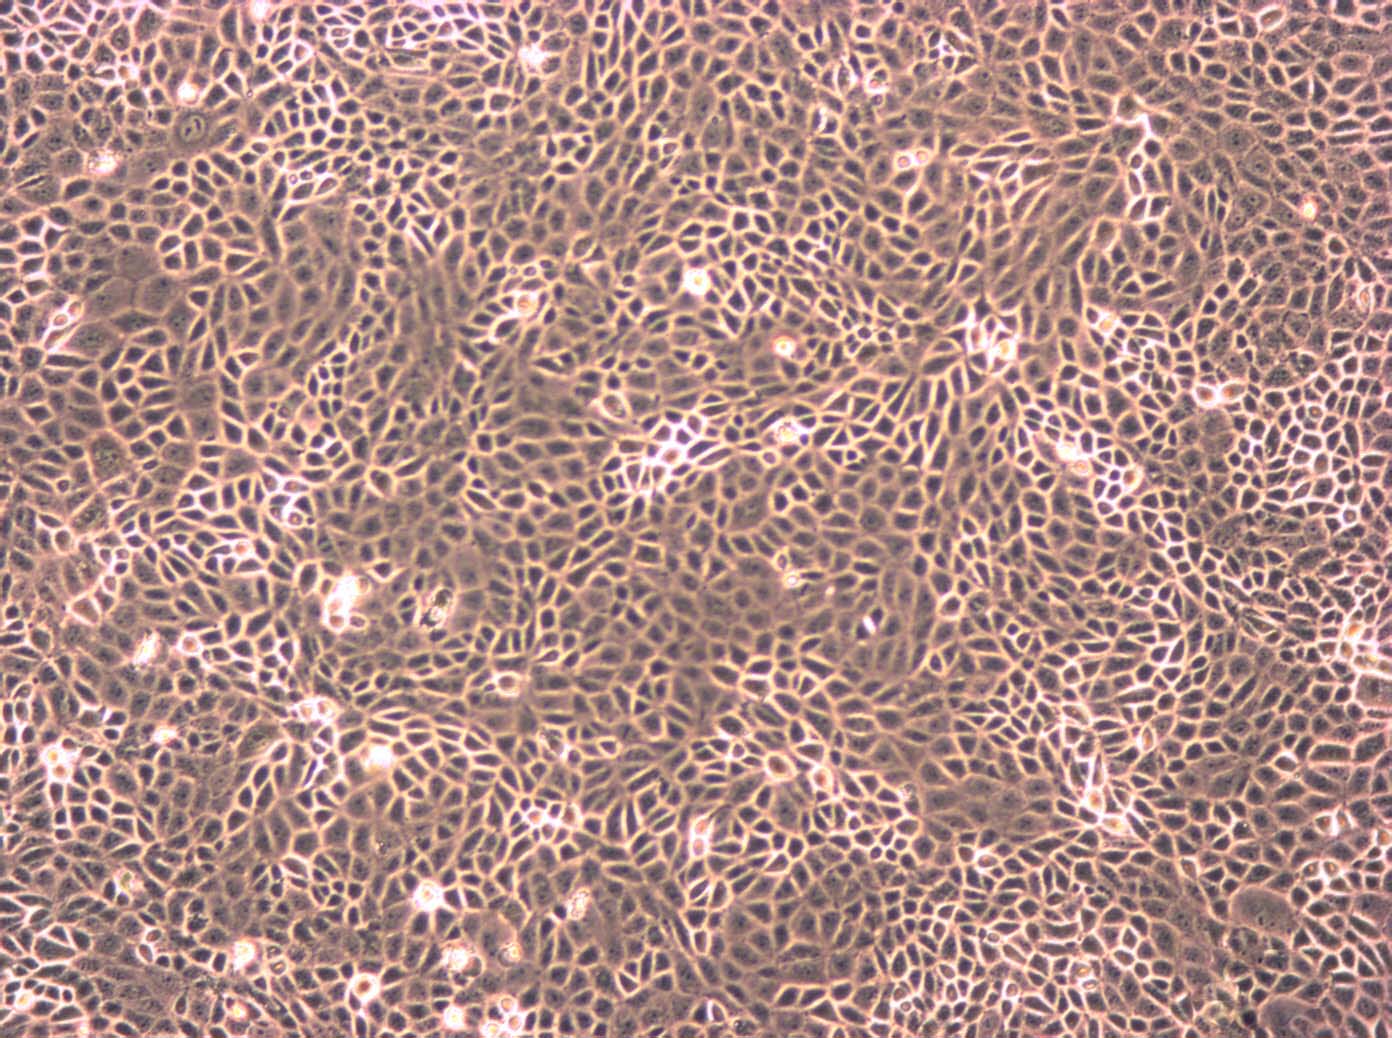 THLE-3:人肝永生化复苏细胞(提供STR鉴定图谱),THLE-3